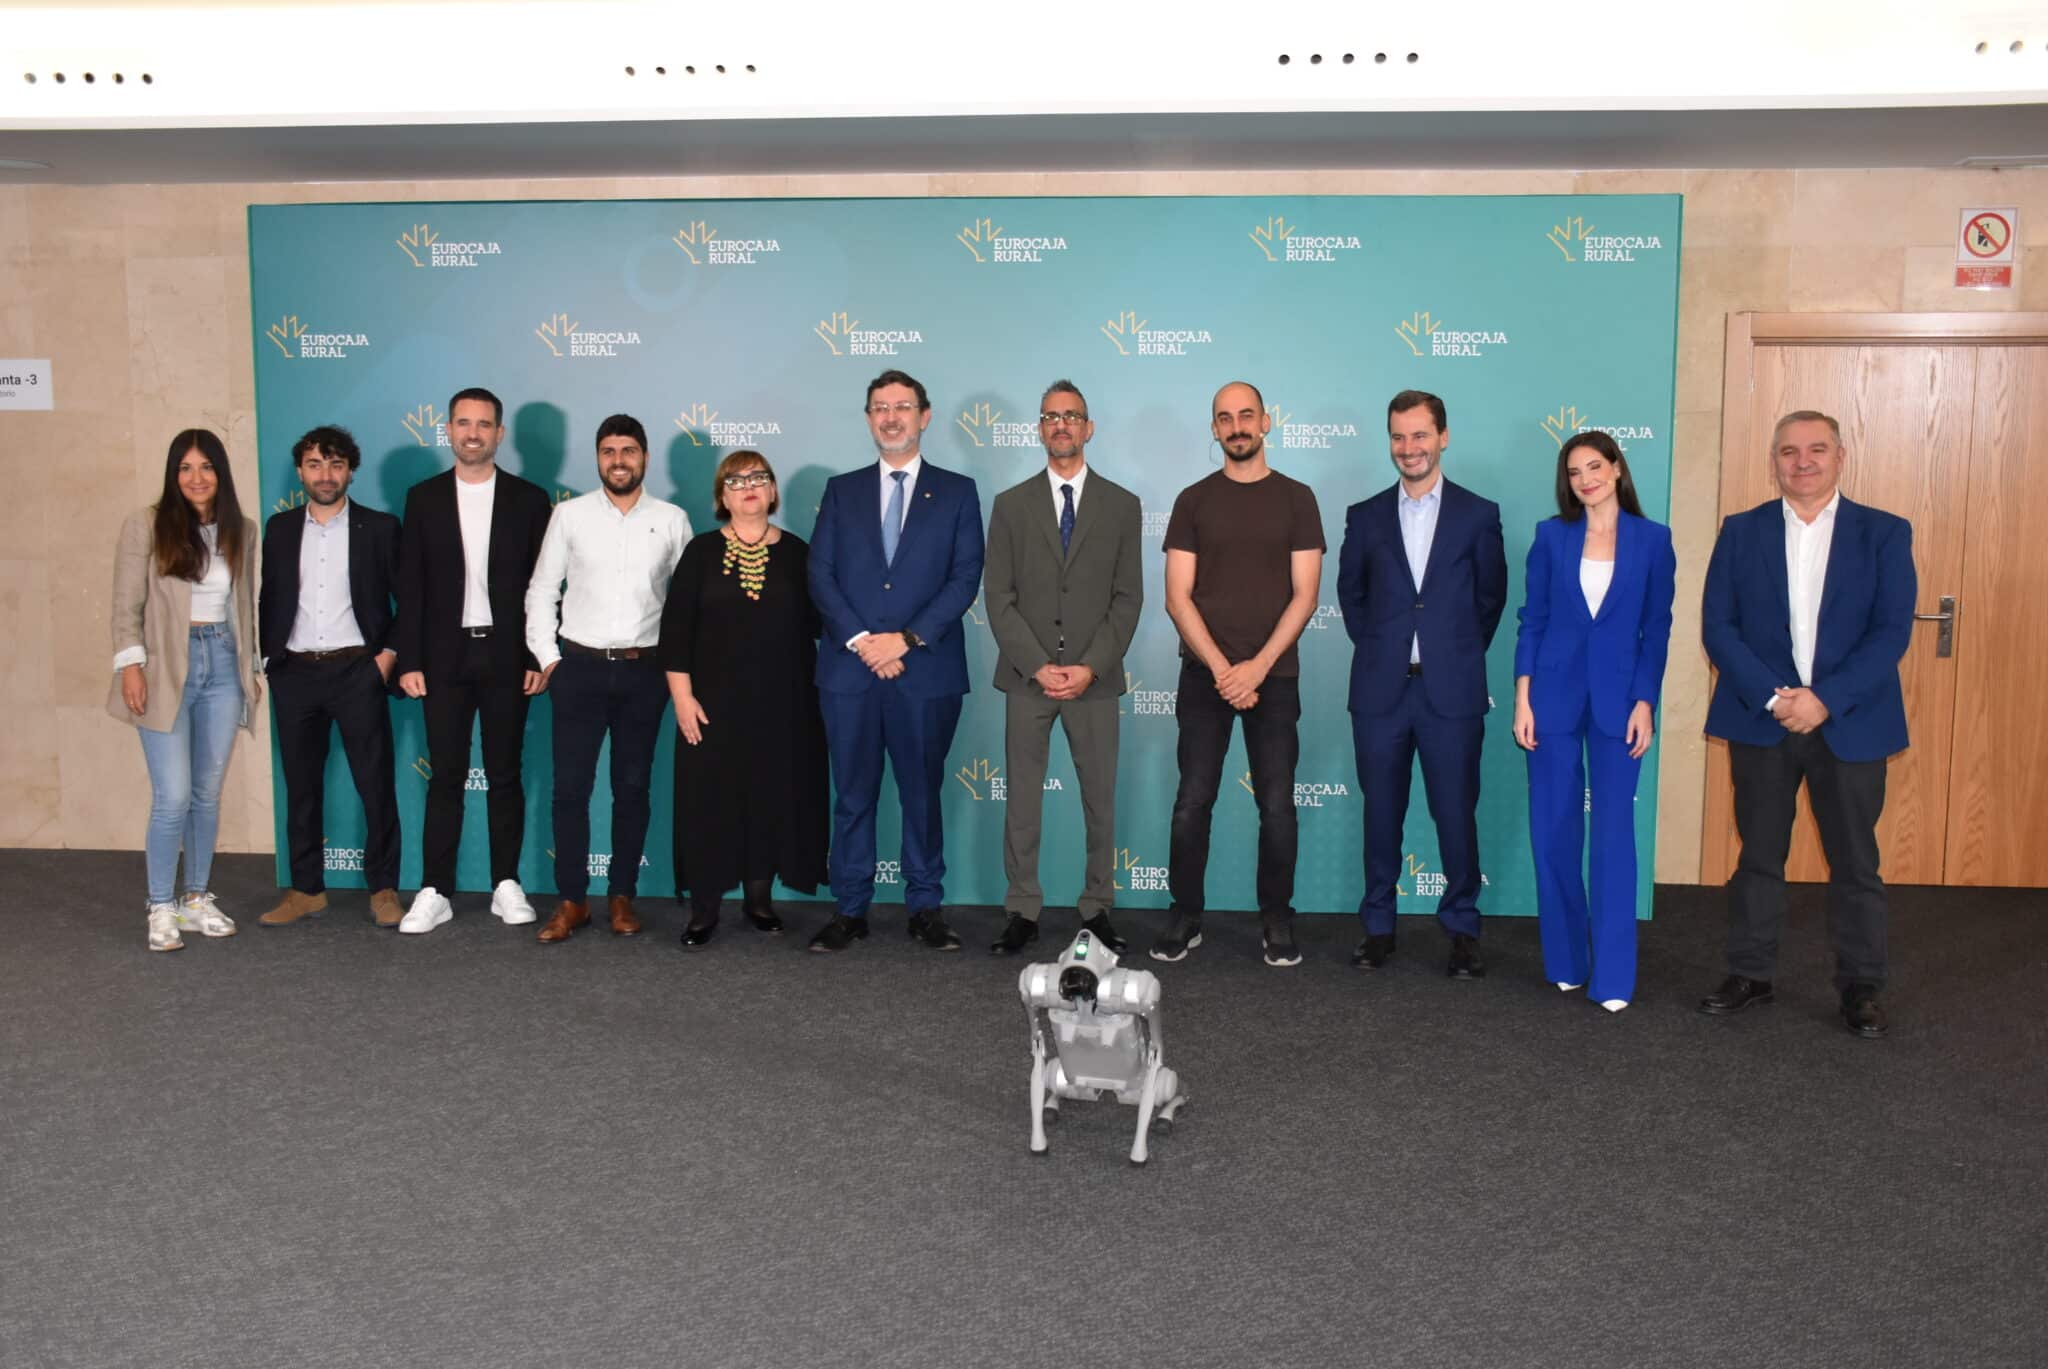 La jornada Digital Summit sobre Inteligencia Artificial que ha desarrollado Eurocaja Rural en Toledo